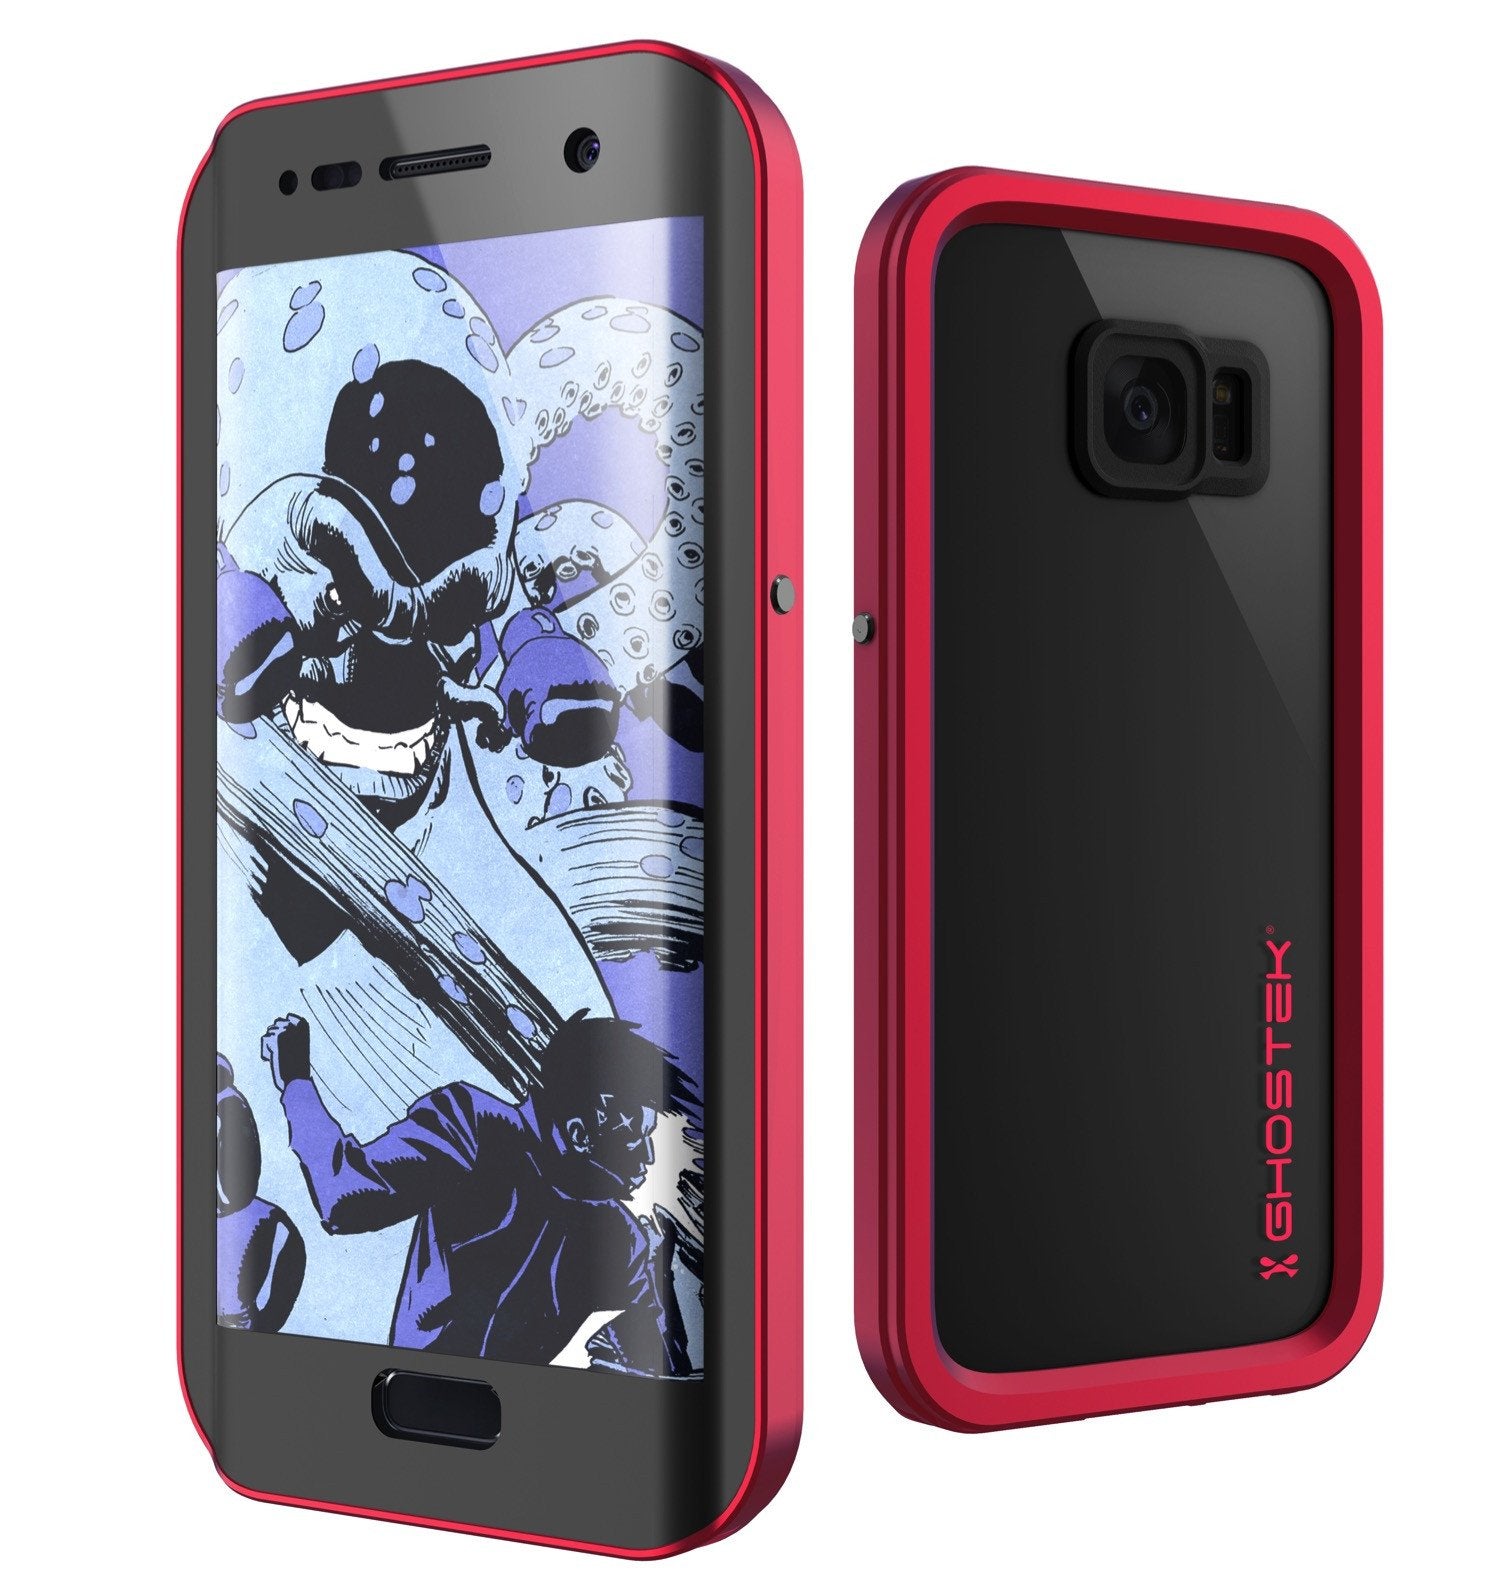 Galaxy S7 EDGE Waterproof Case, Ghostek Atomic 2.0 Red Shock/Dirt/Snow Proof | Lifetime Warranty - PunkCase NZ